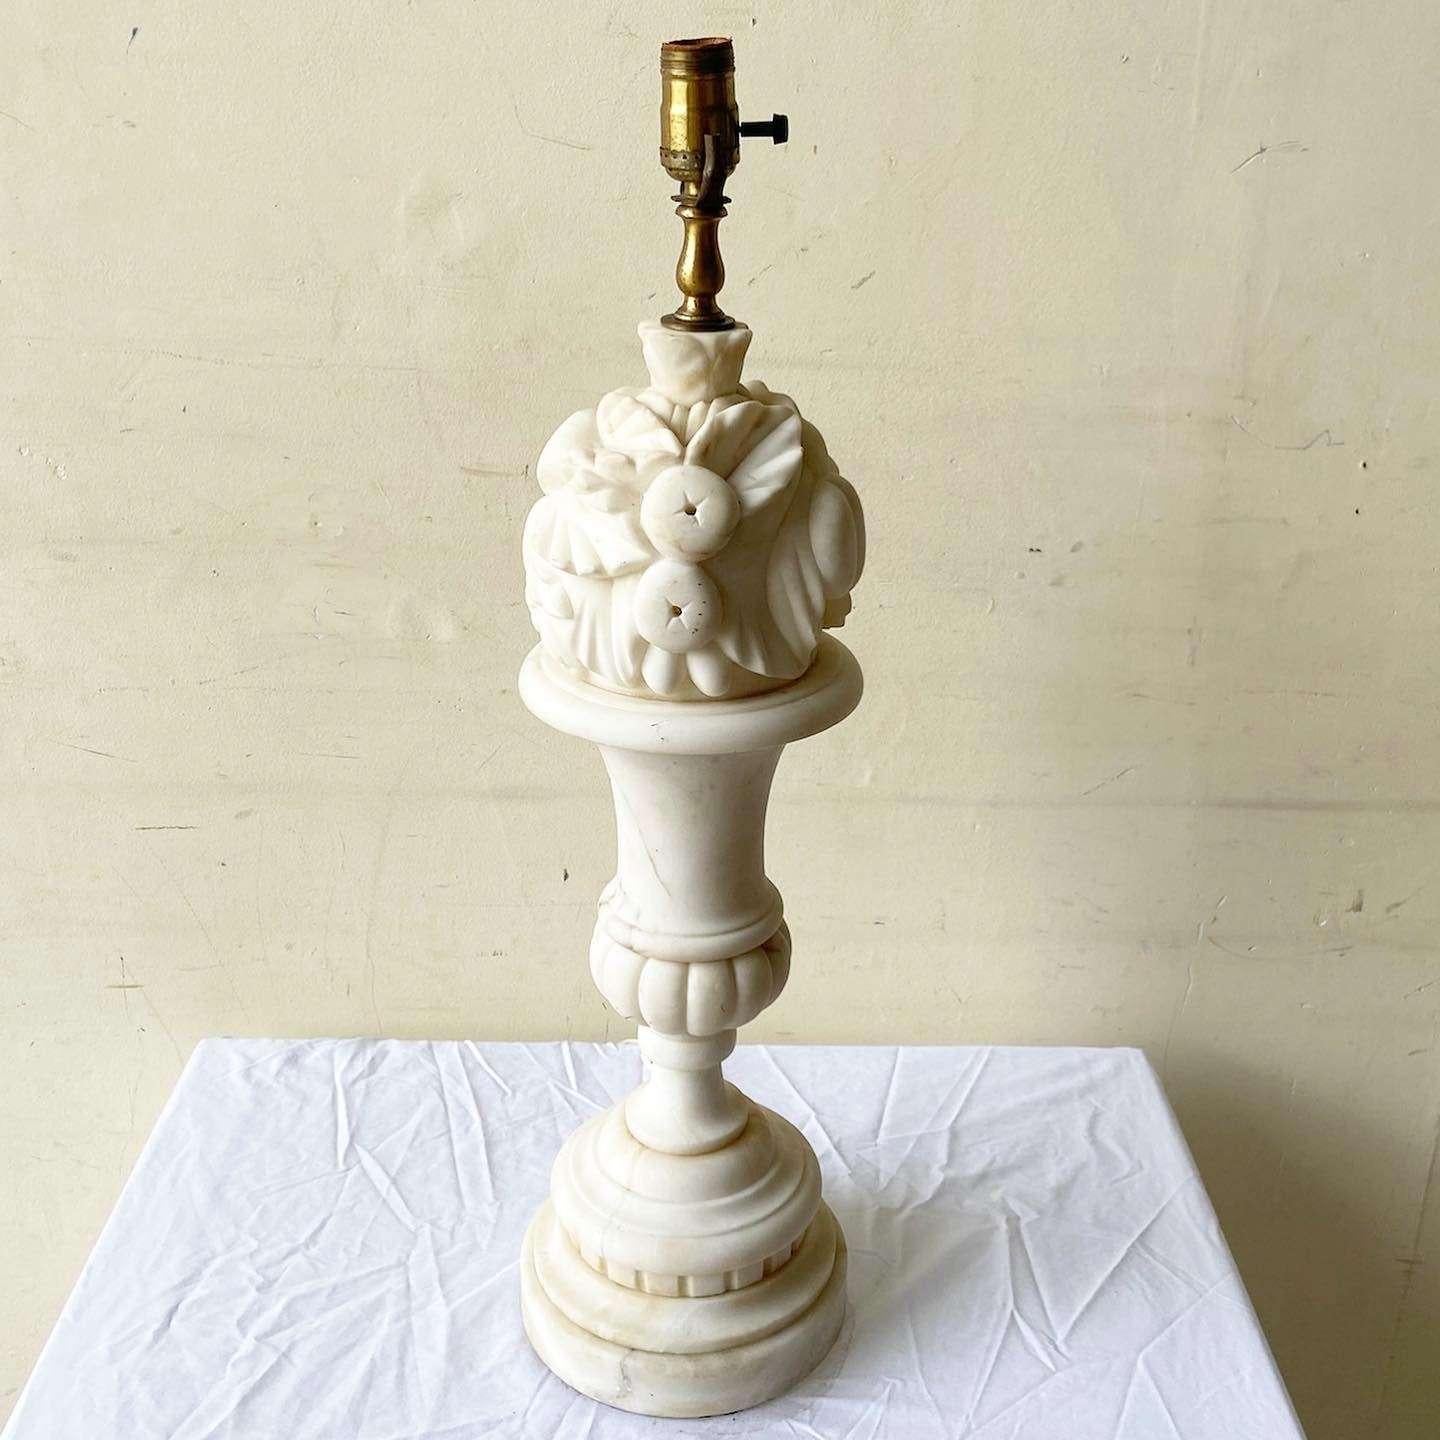 Exceptionnelle lampe de table en albâtre sculptée à la main au début du 20e siècle. Le haut de la lampe est orné d'une sculpture de fruits.
